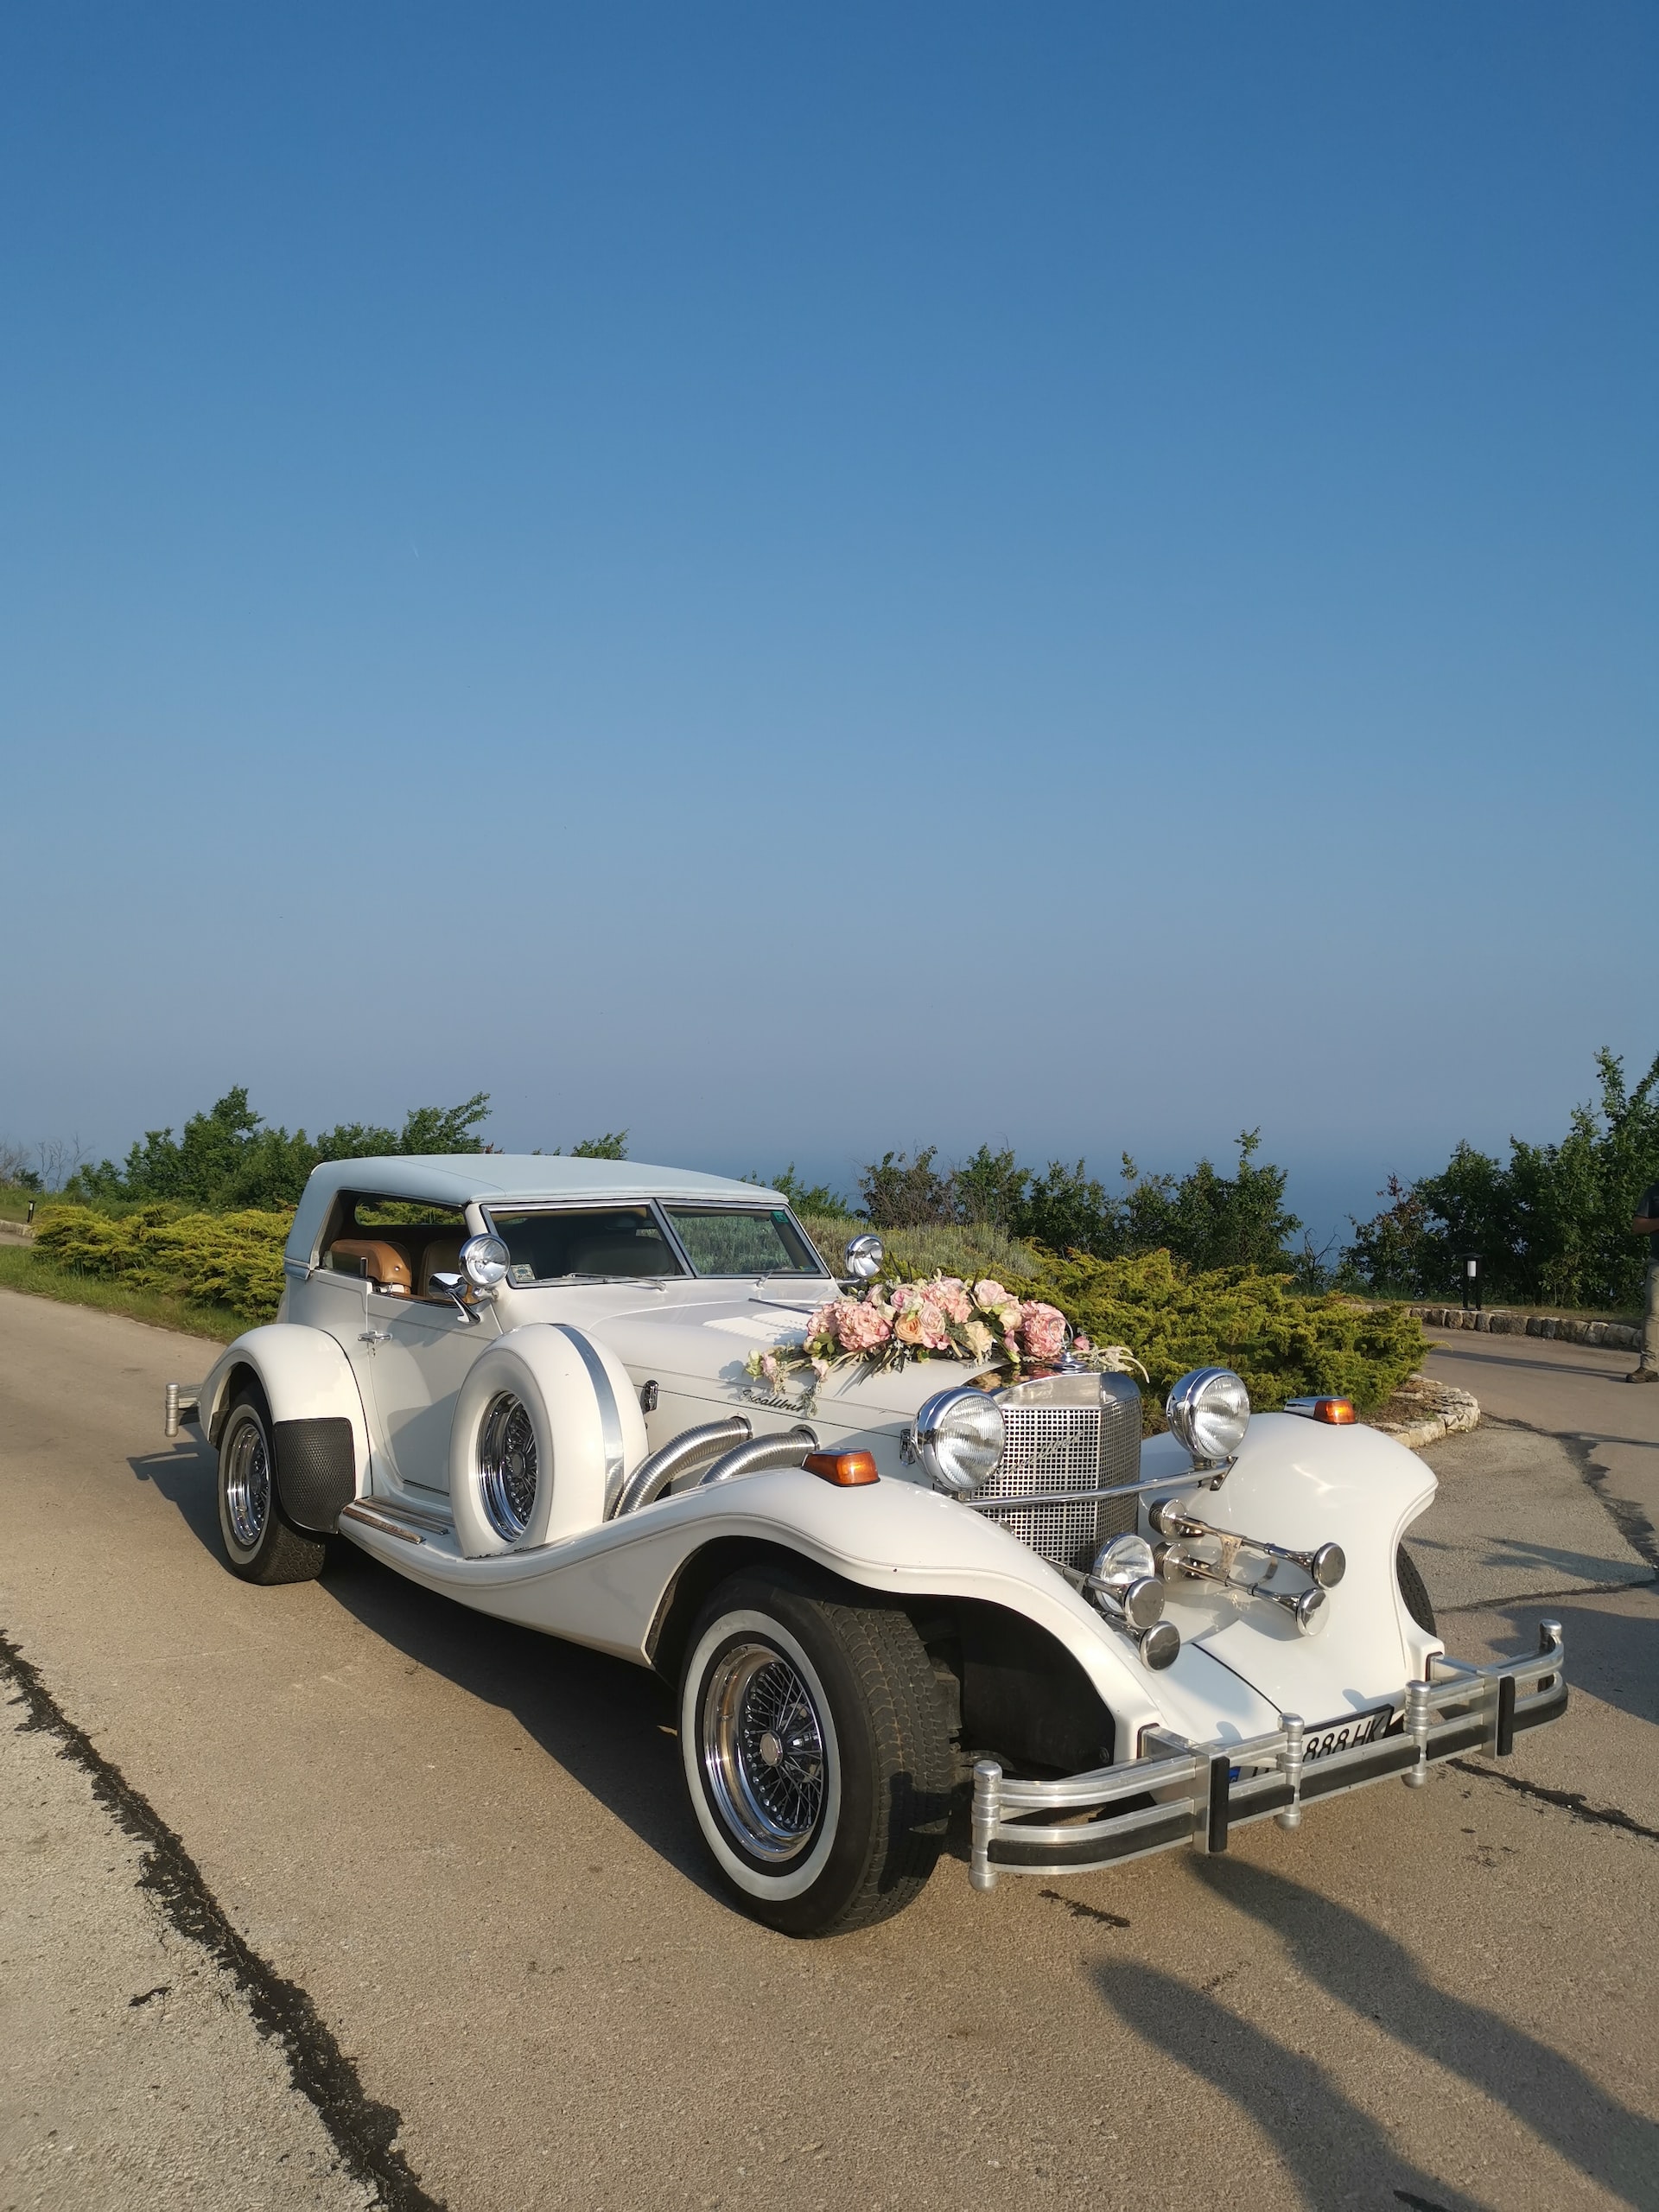 Свадебные автомобили